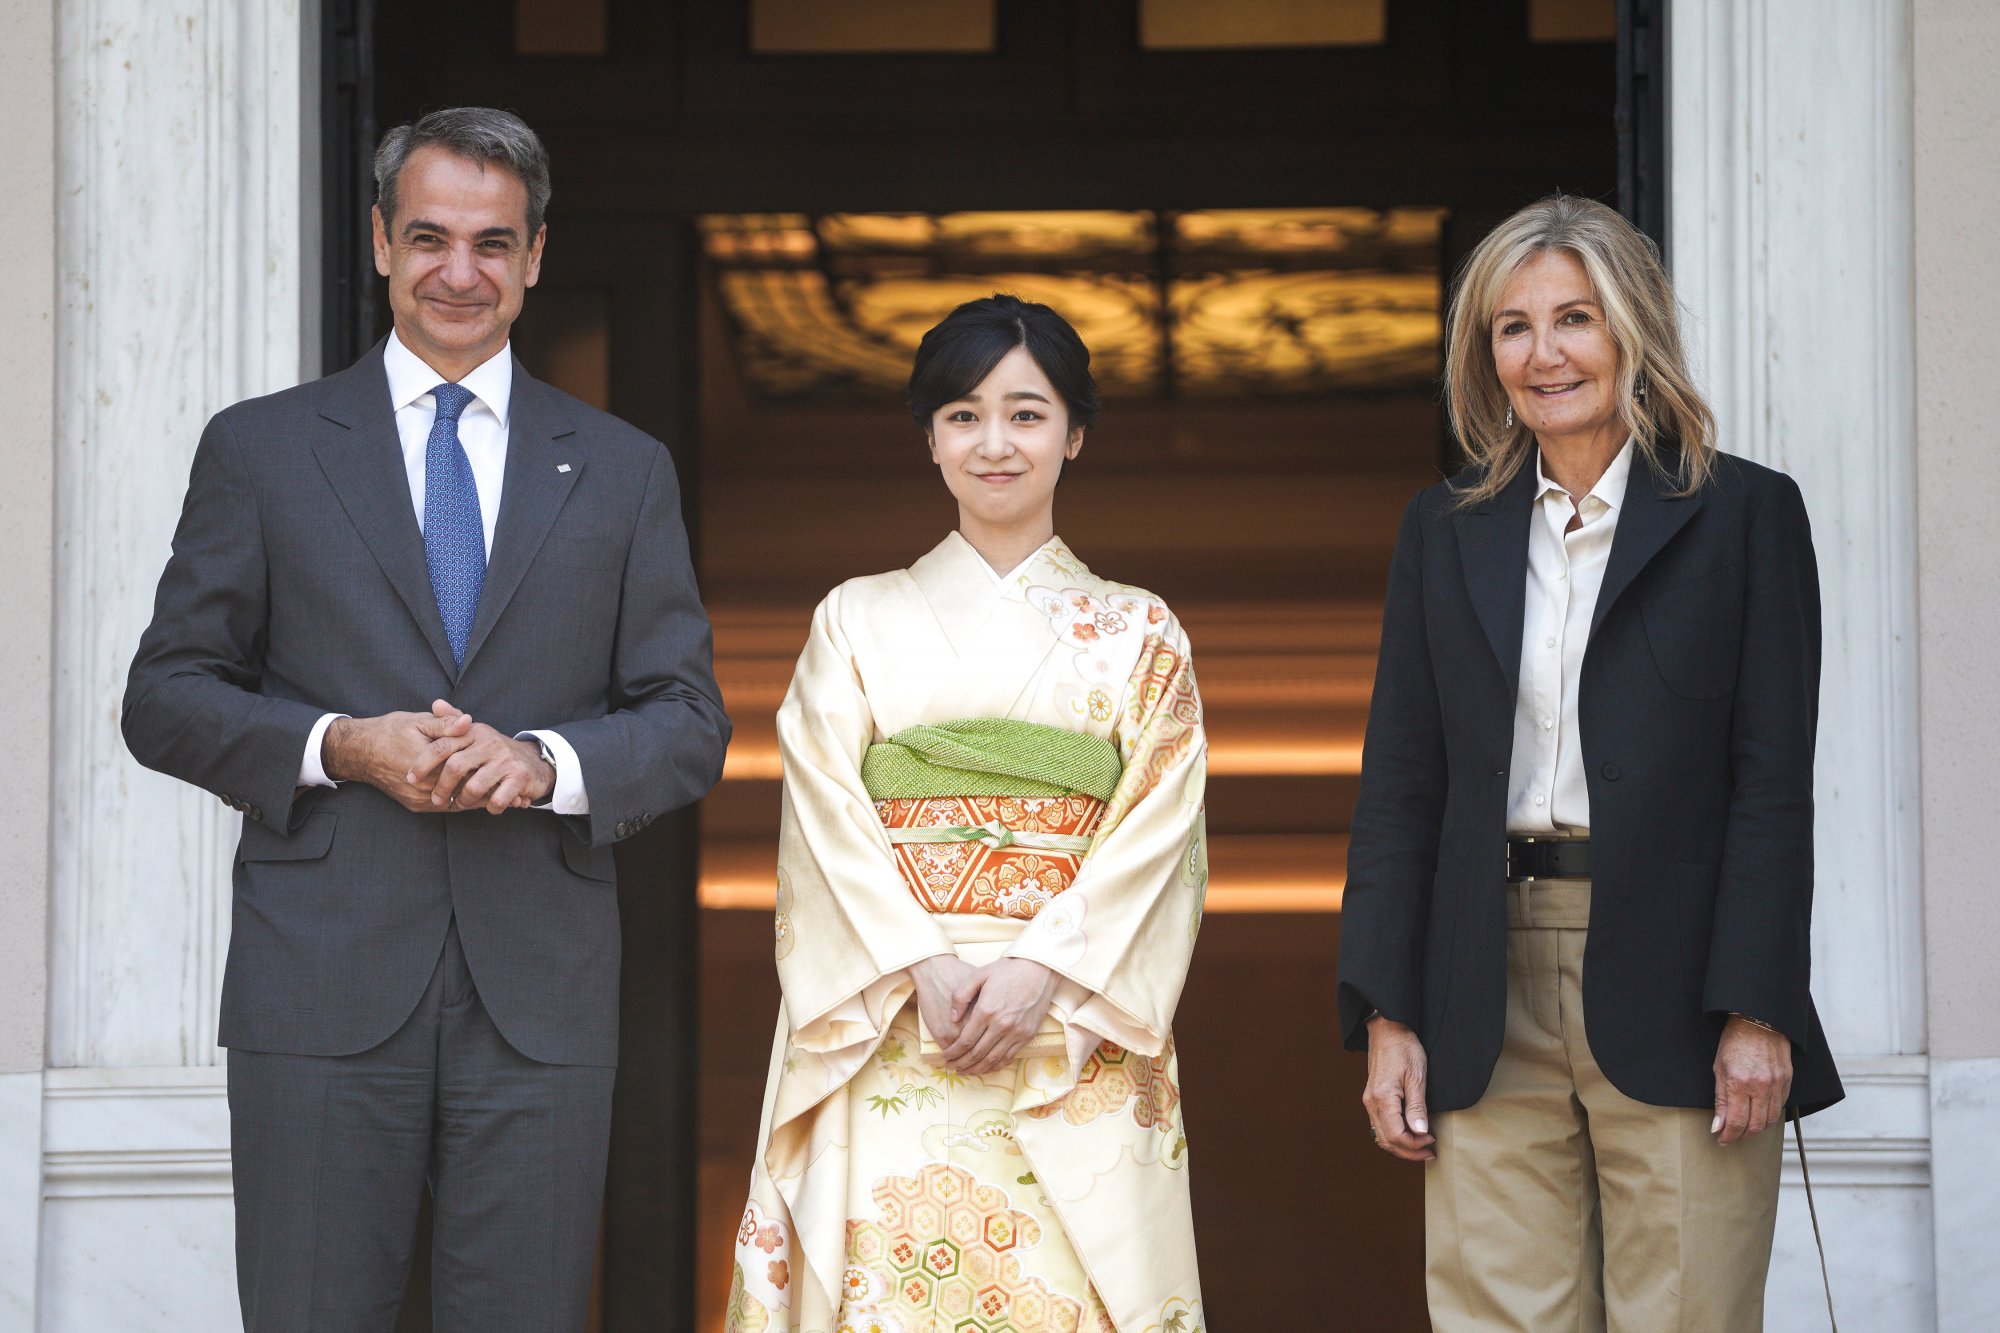 Με την πριγκίπισσα Κάκο της Ιαπωνίας συναντήθηκαν ο Κ. Μητσοτάκης και η Μ. Γκραμπόφσκι